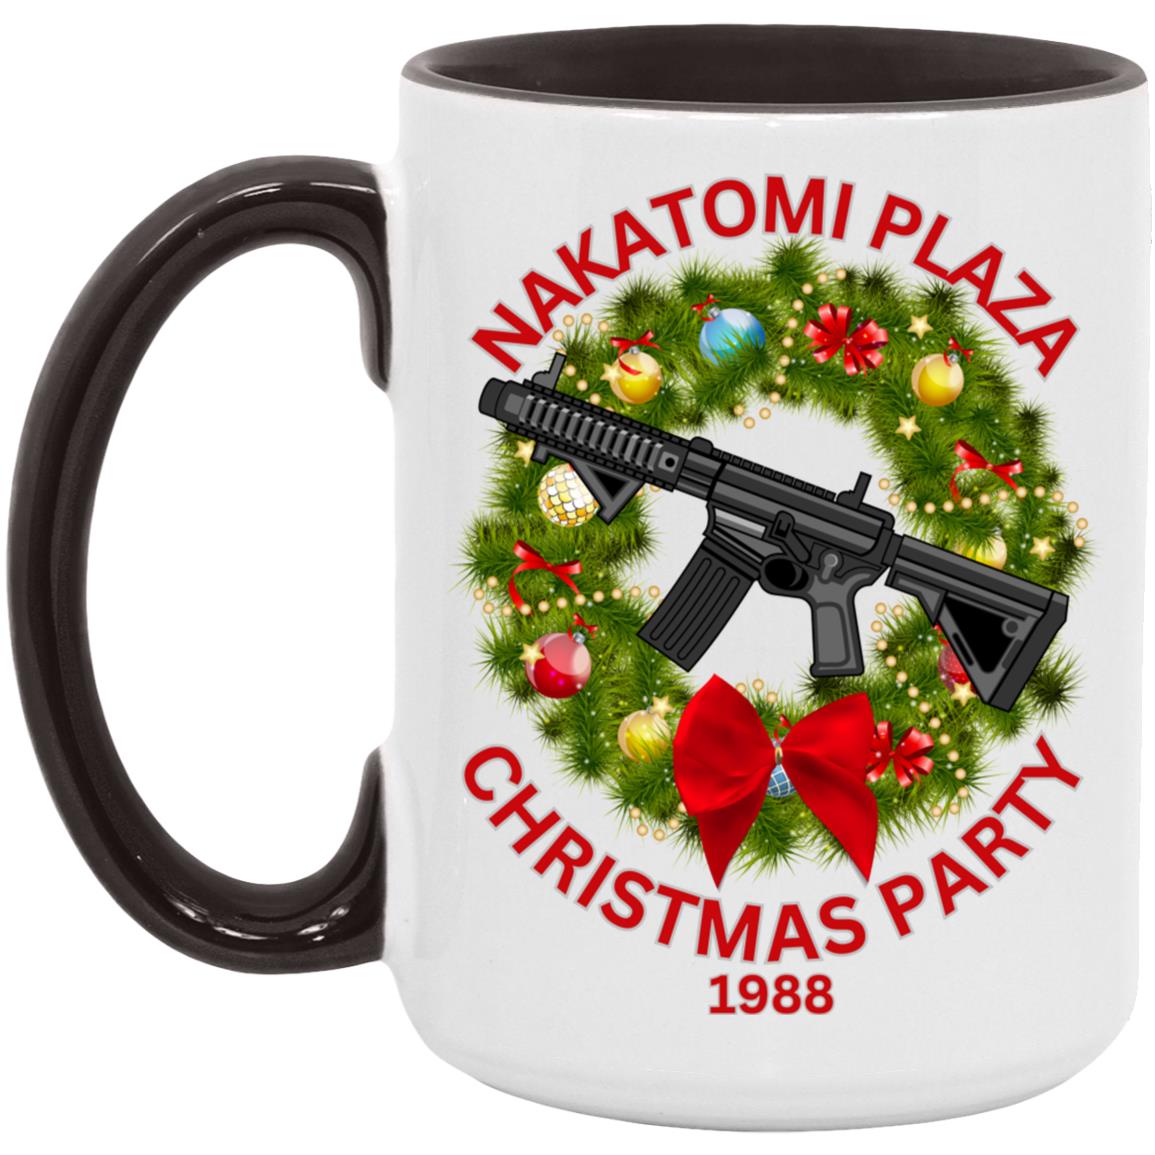 Nakotomi Plaza Christmas Party  15oz Accent Mug